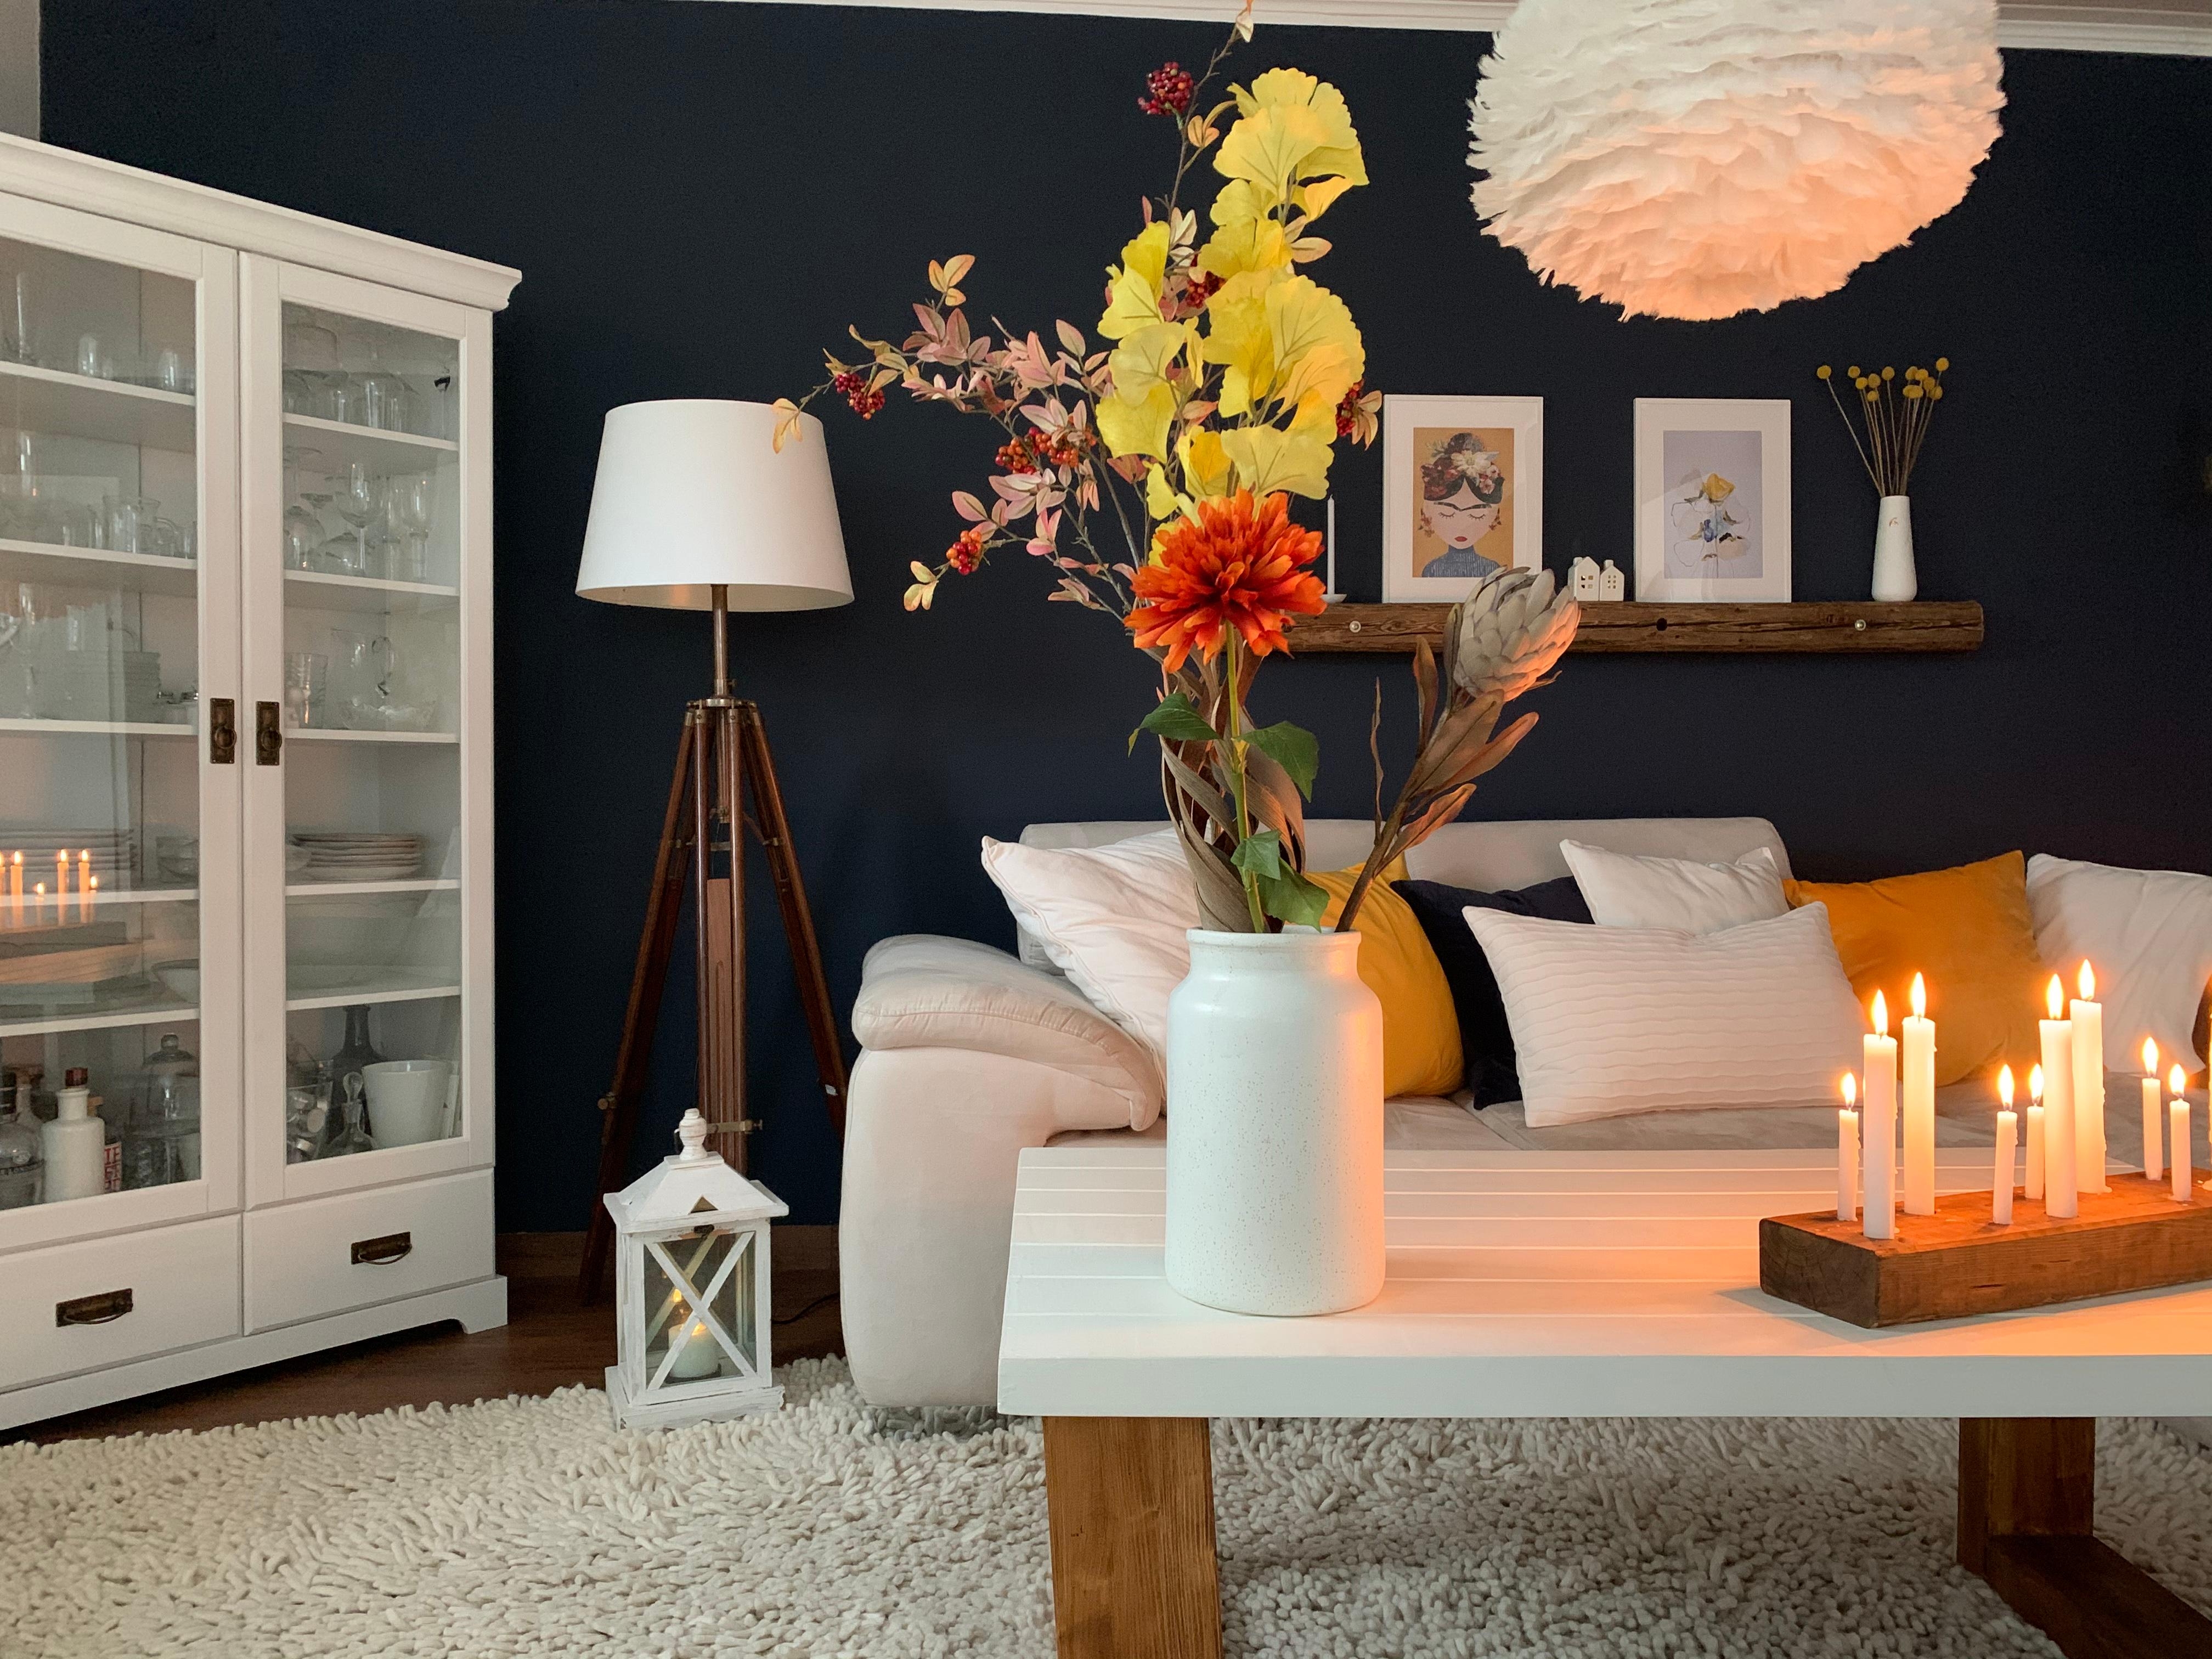 Einmal den Pinsel geschwungen und sooo happy 😍 #wohnzimmer #renovieren #neuefarbe #dekoideen